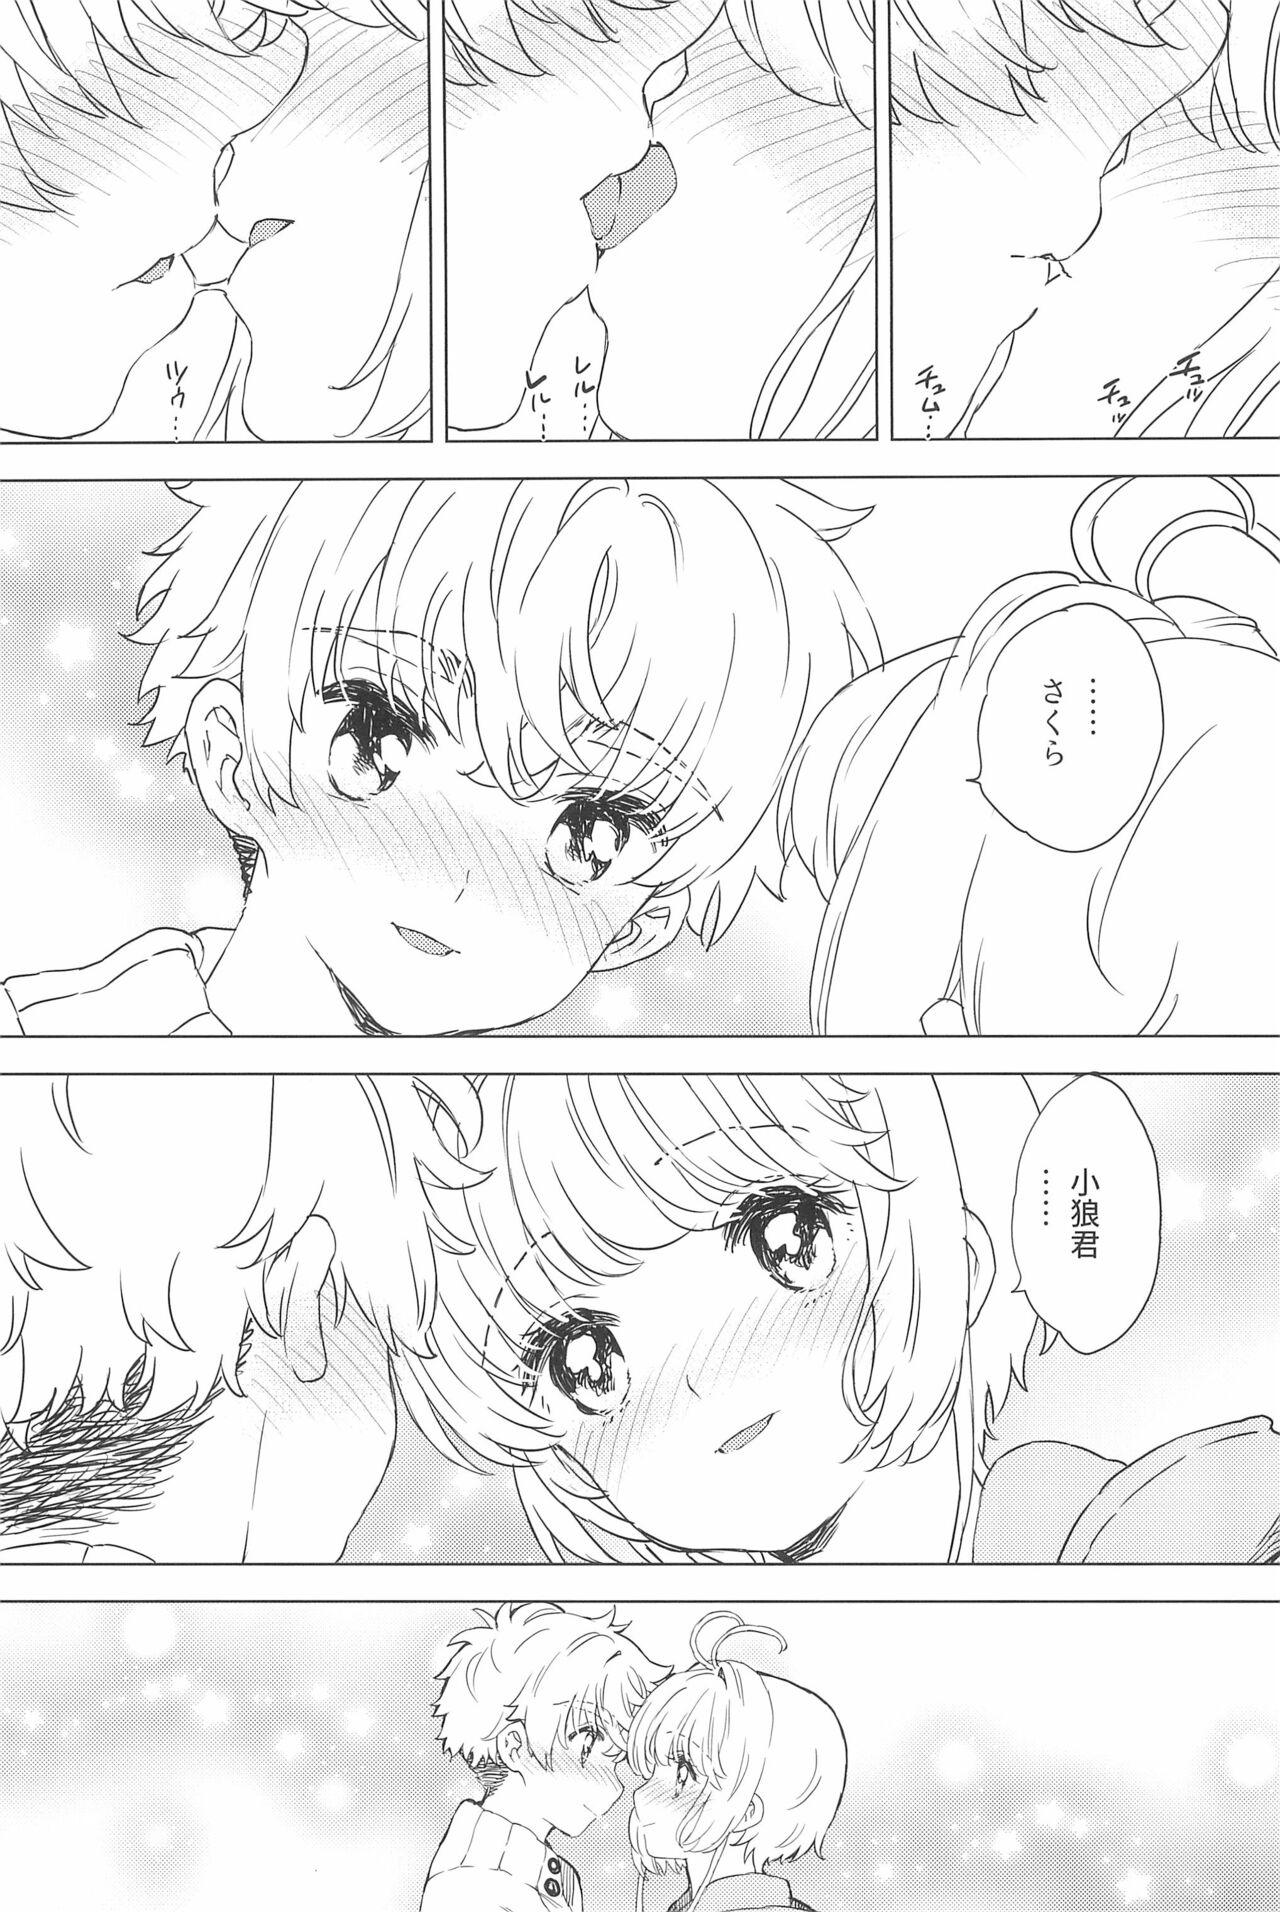 Bra Sakura to Syaoran no Ouchi Date - Cardcaptor sakura Sixtynine - Page 11